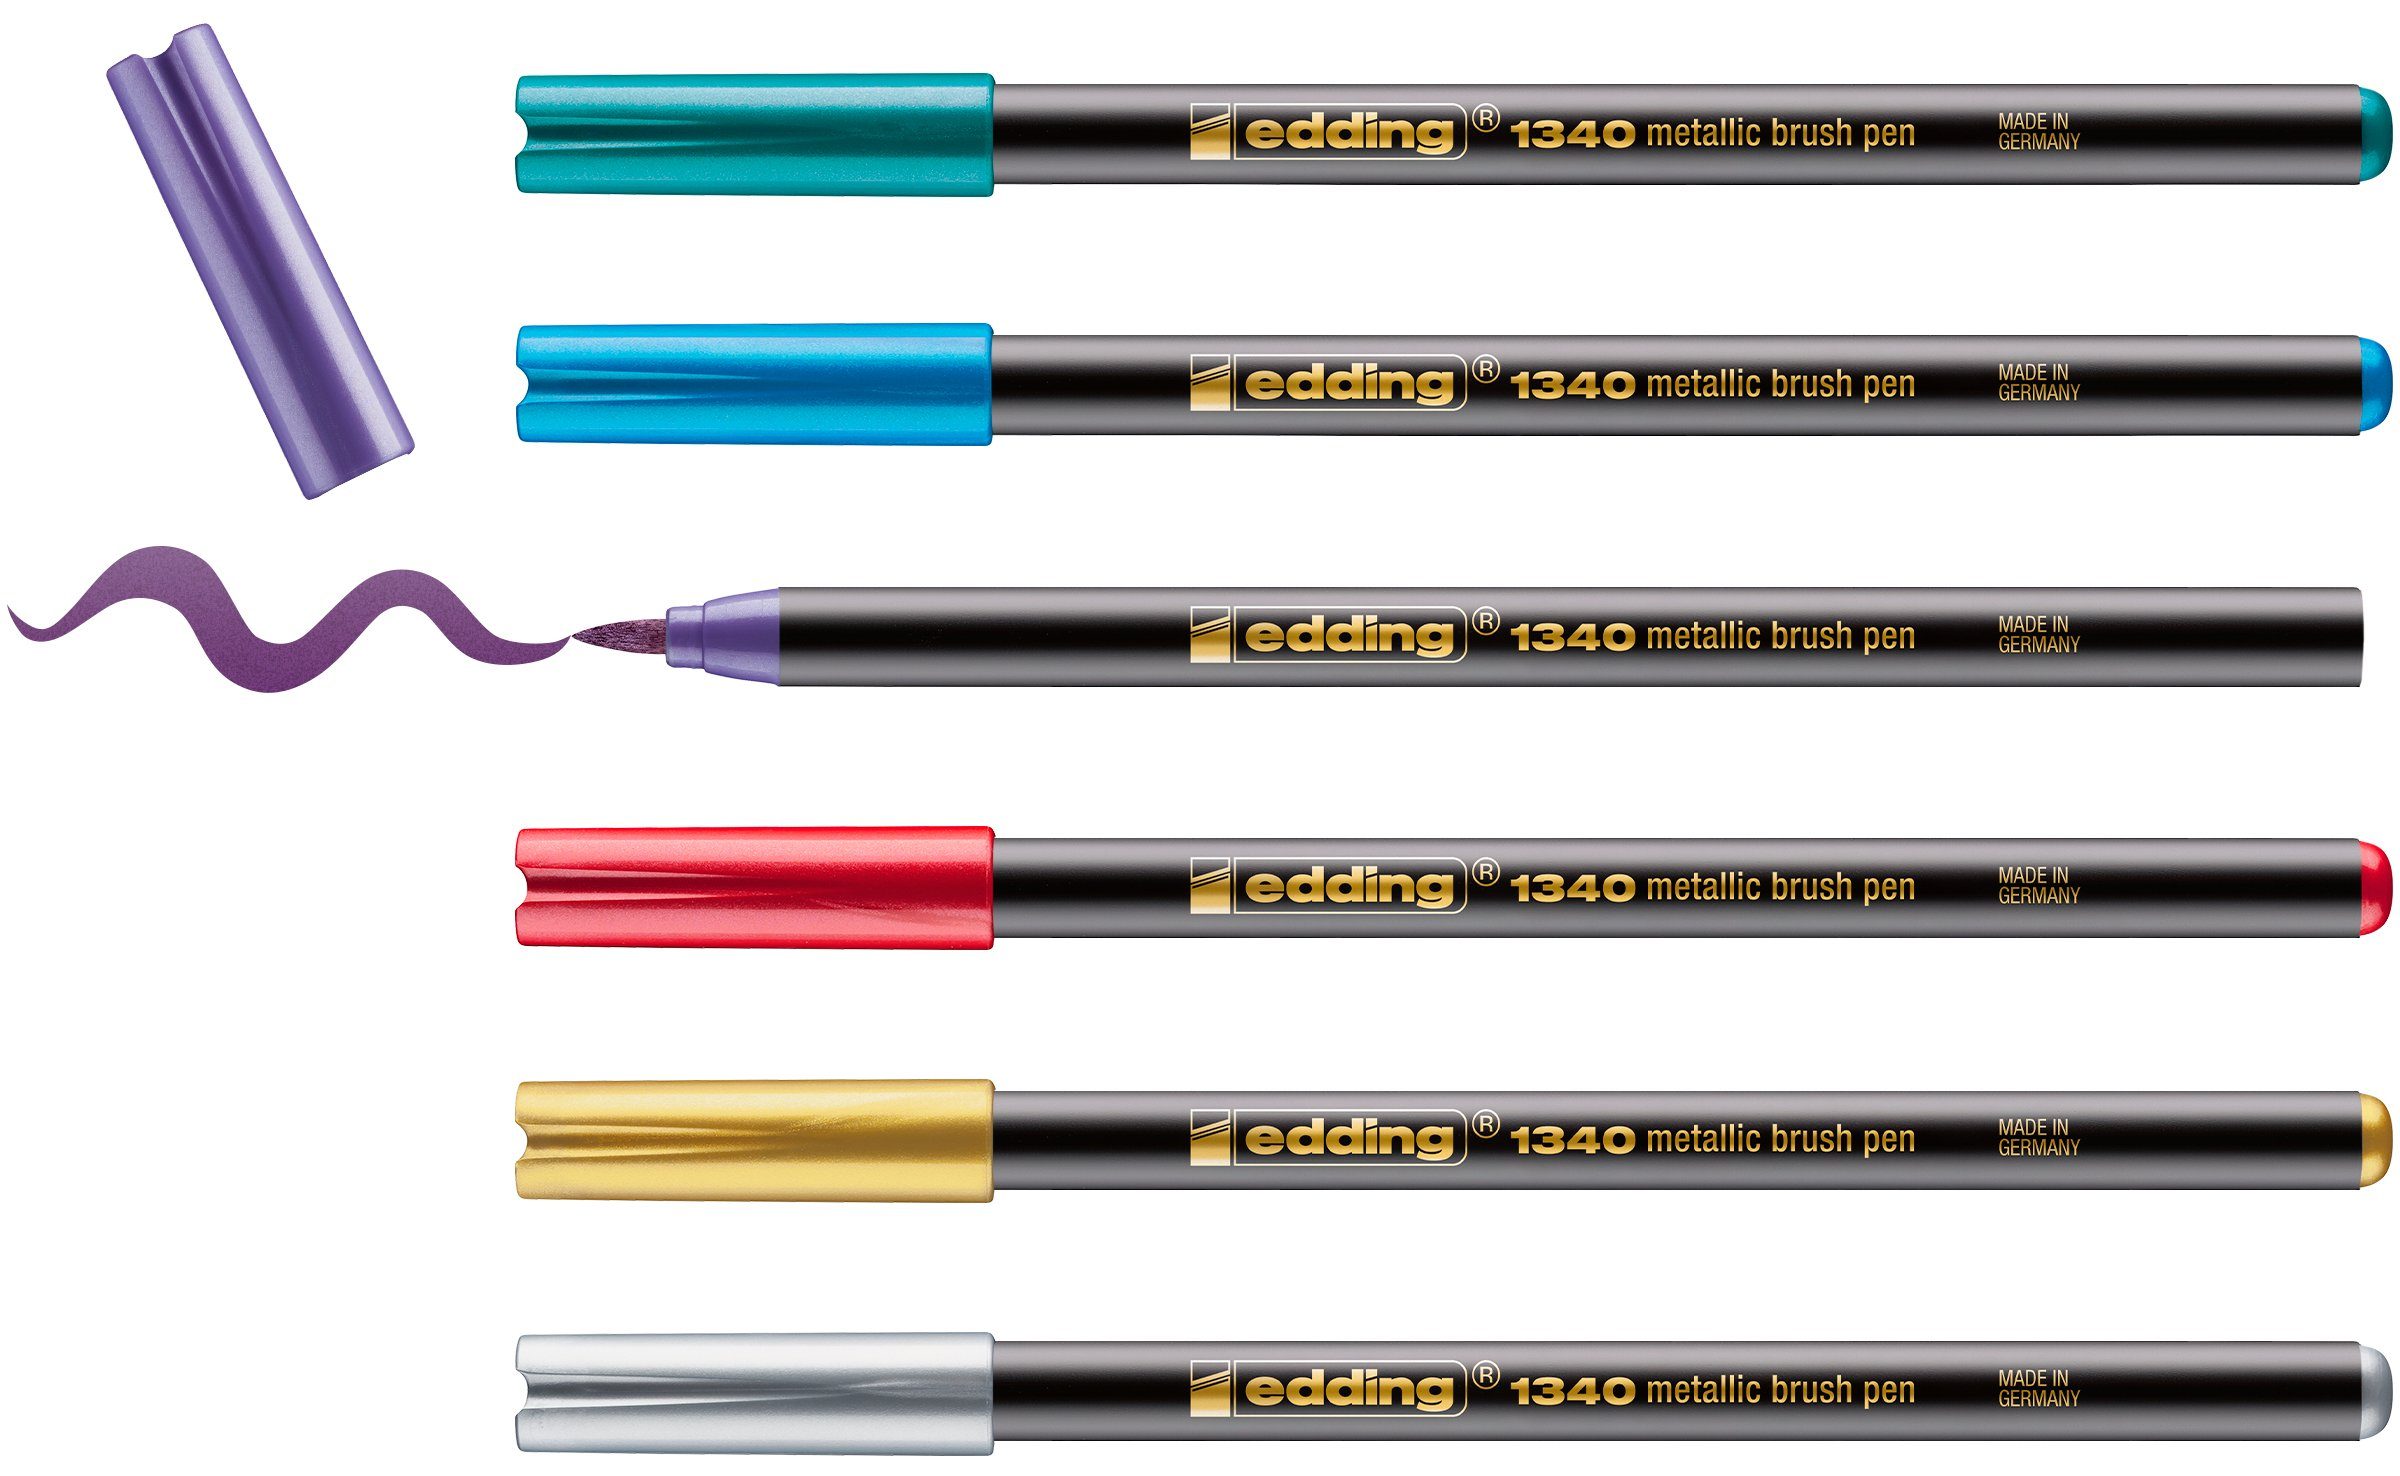 edding Pinselstift Metallic, 1340 Pinselstift 6er-Set